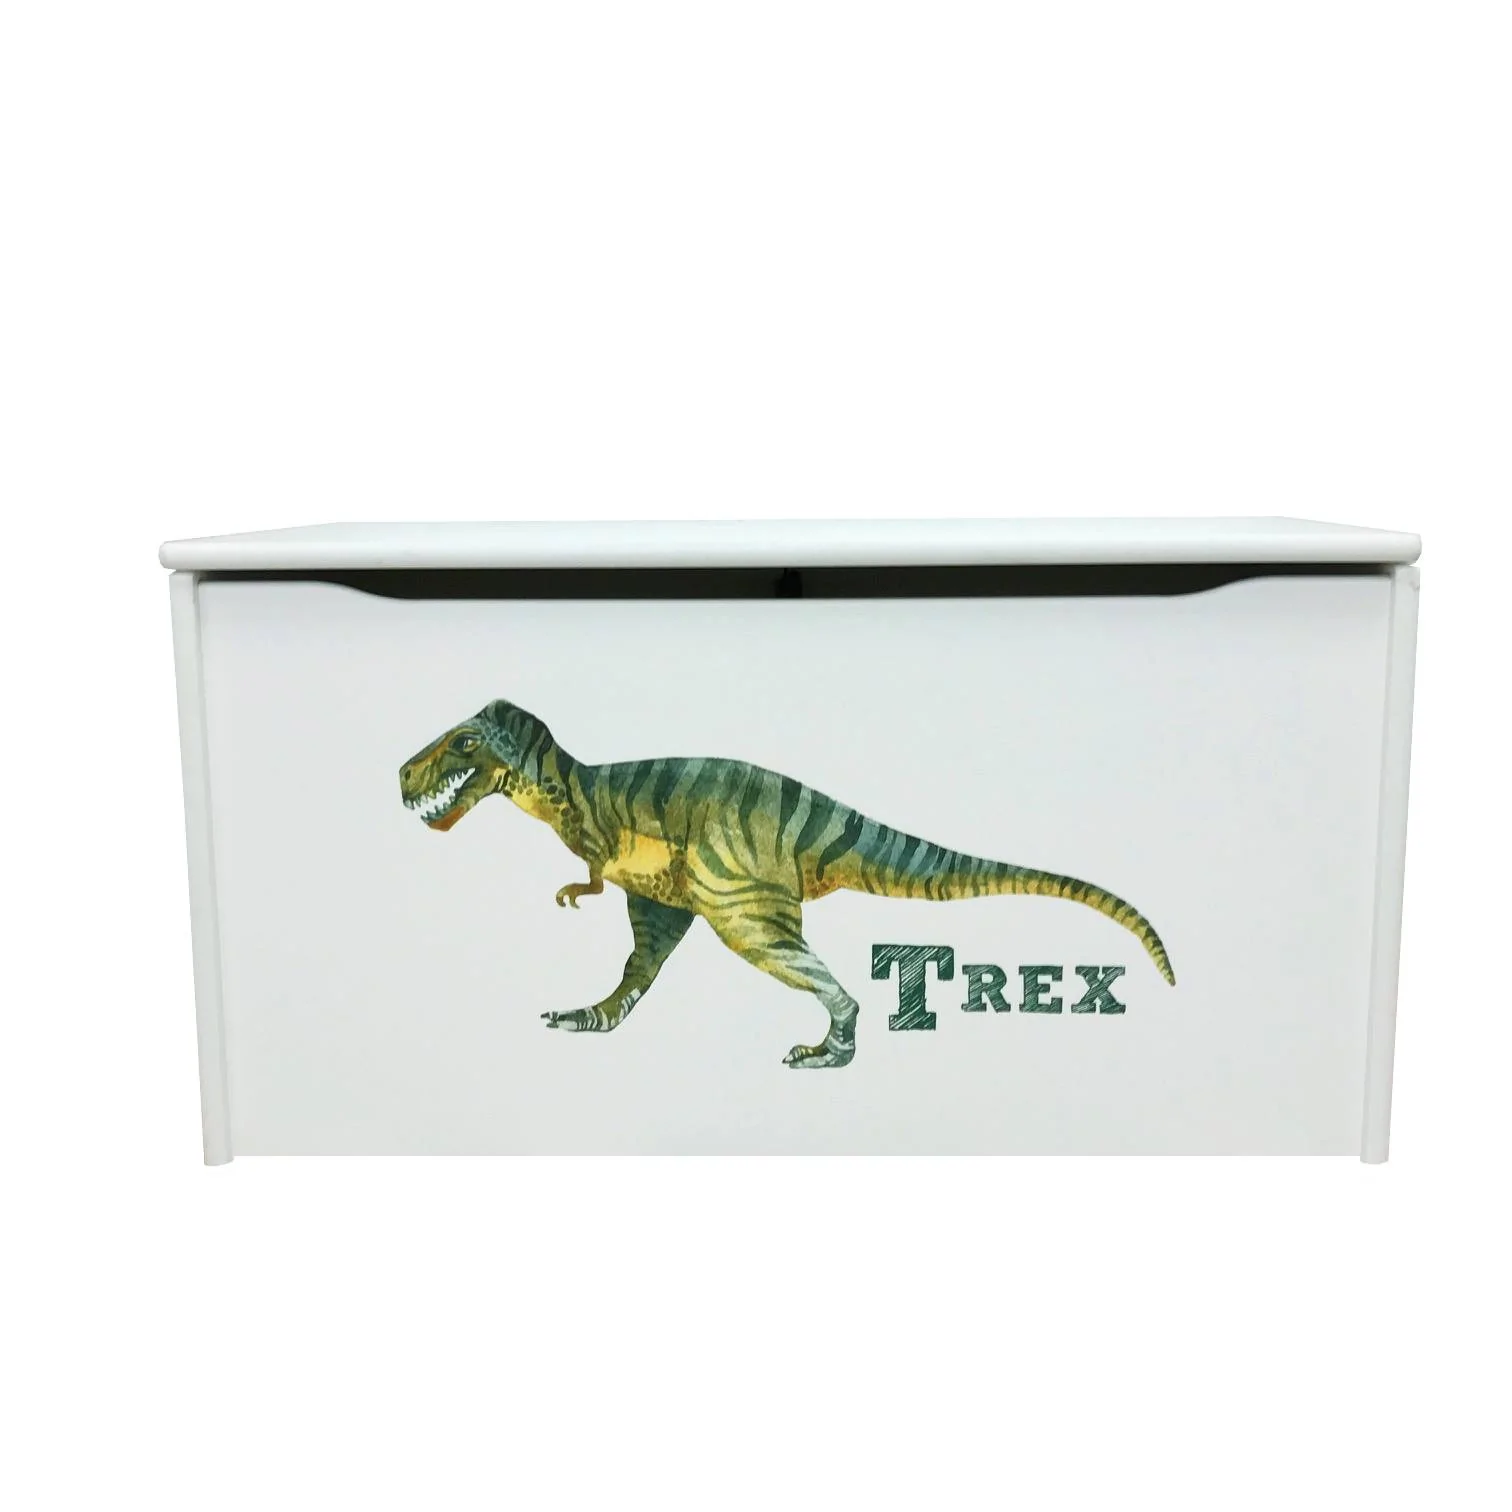 Little Rex Dinosaur Printed White Toy Storage Box